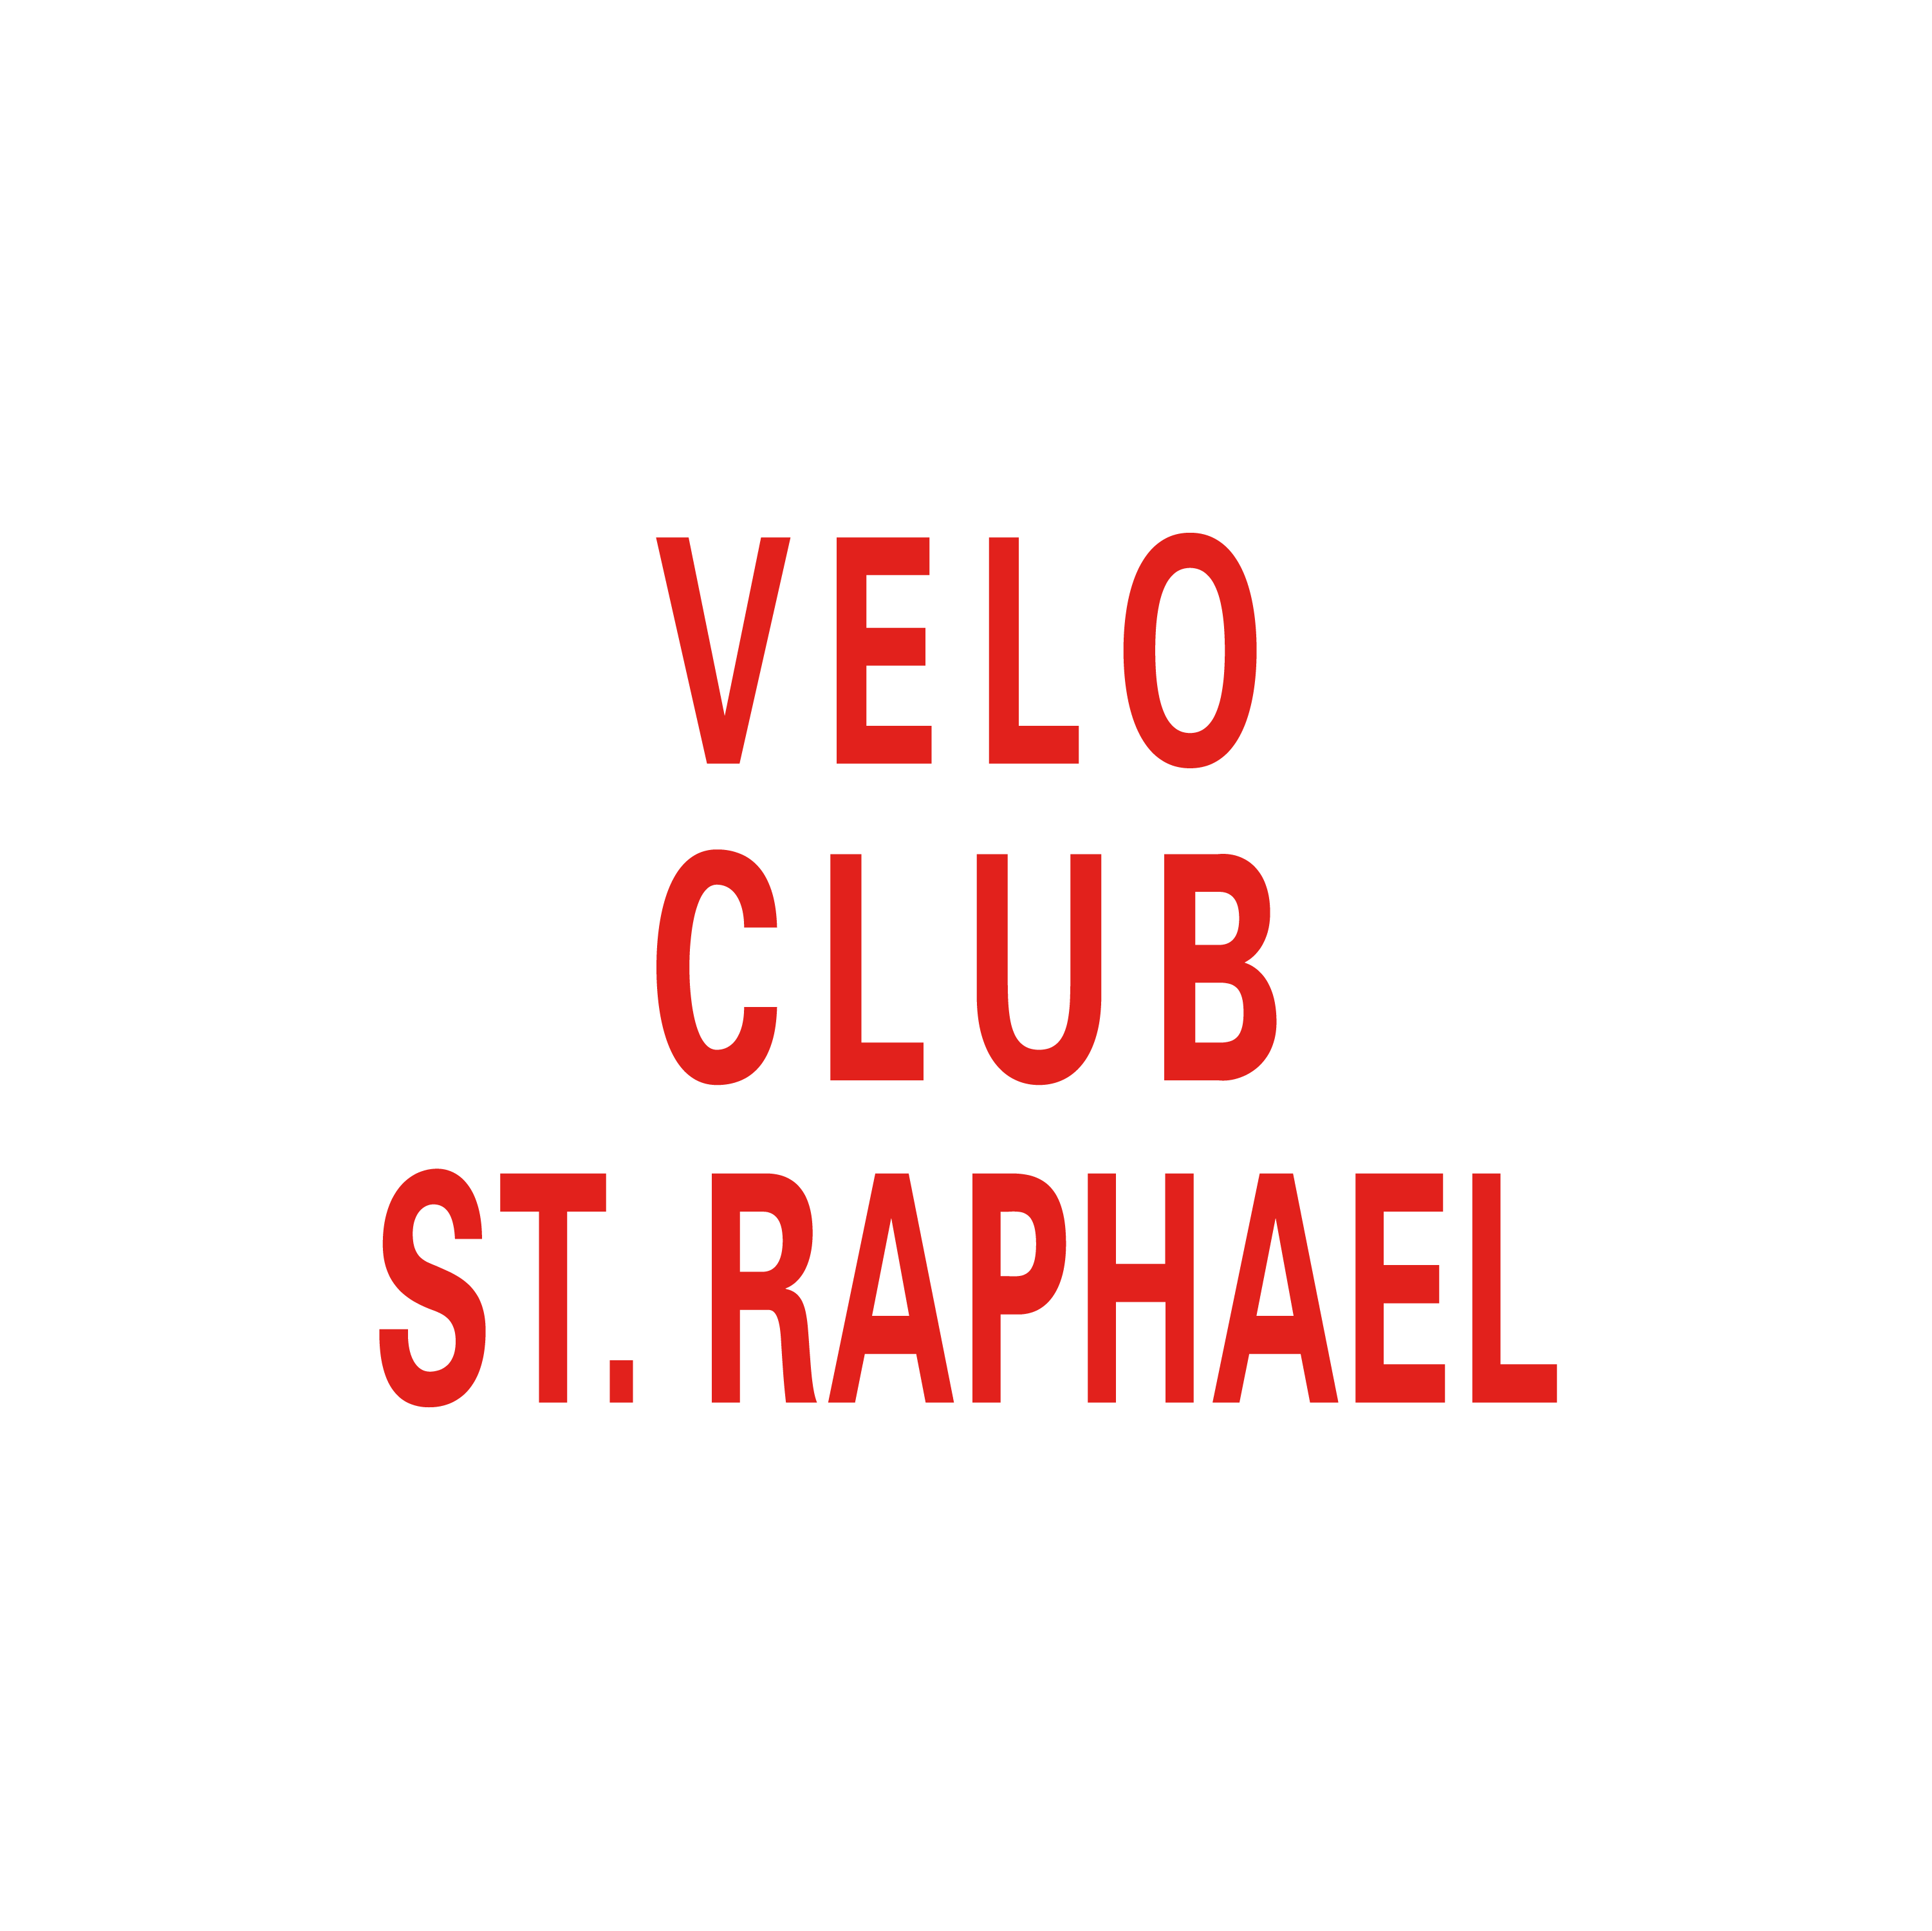 Club Image for VELO CLUB ST RAPHAEL